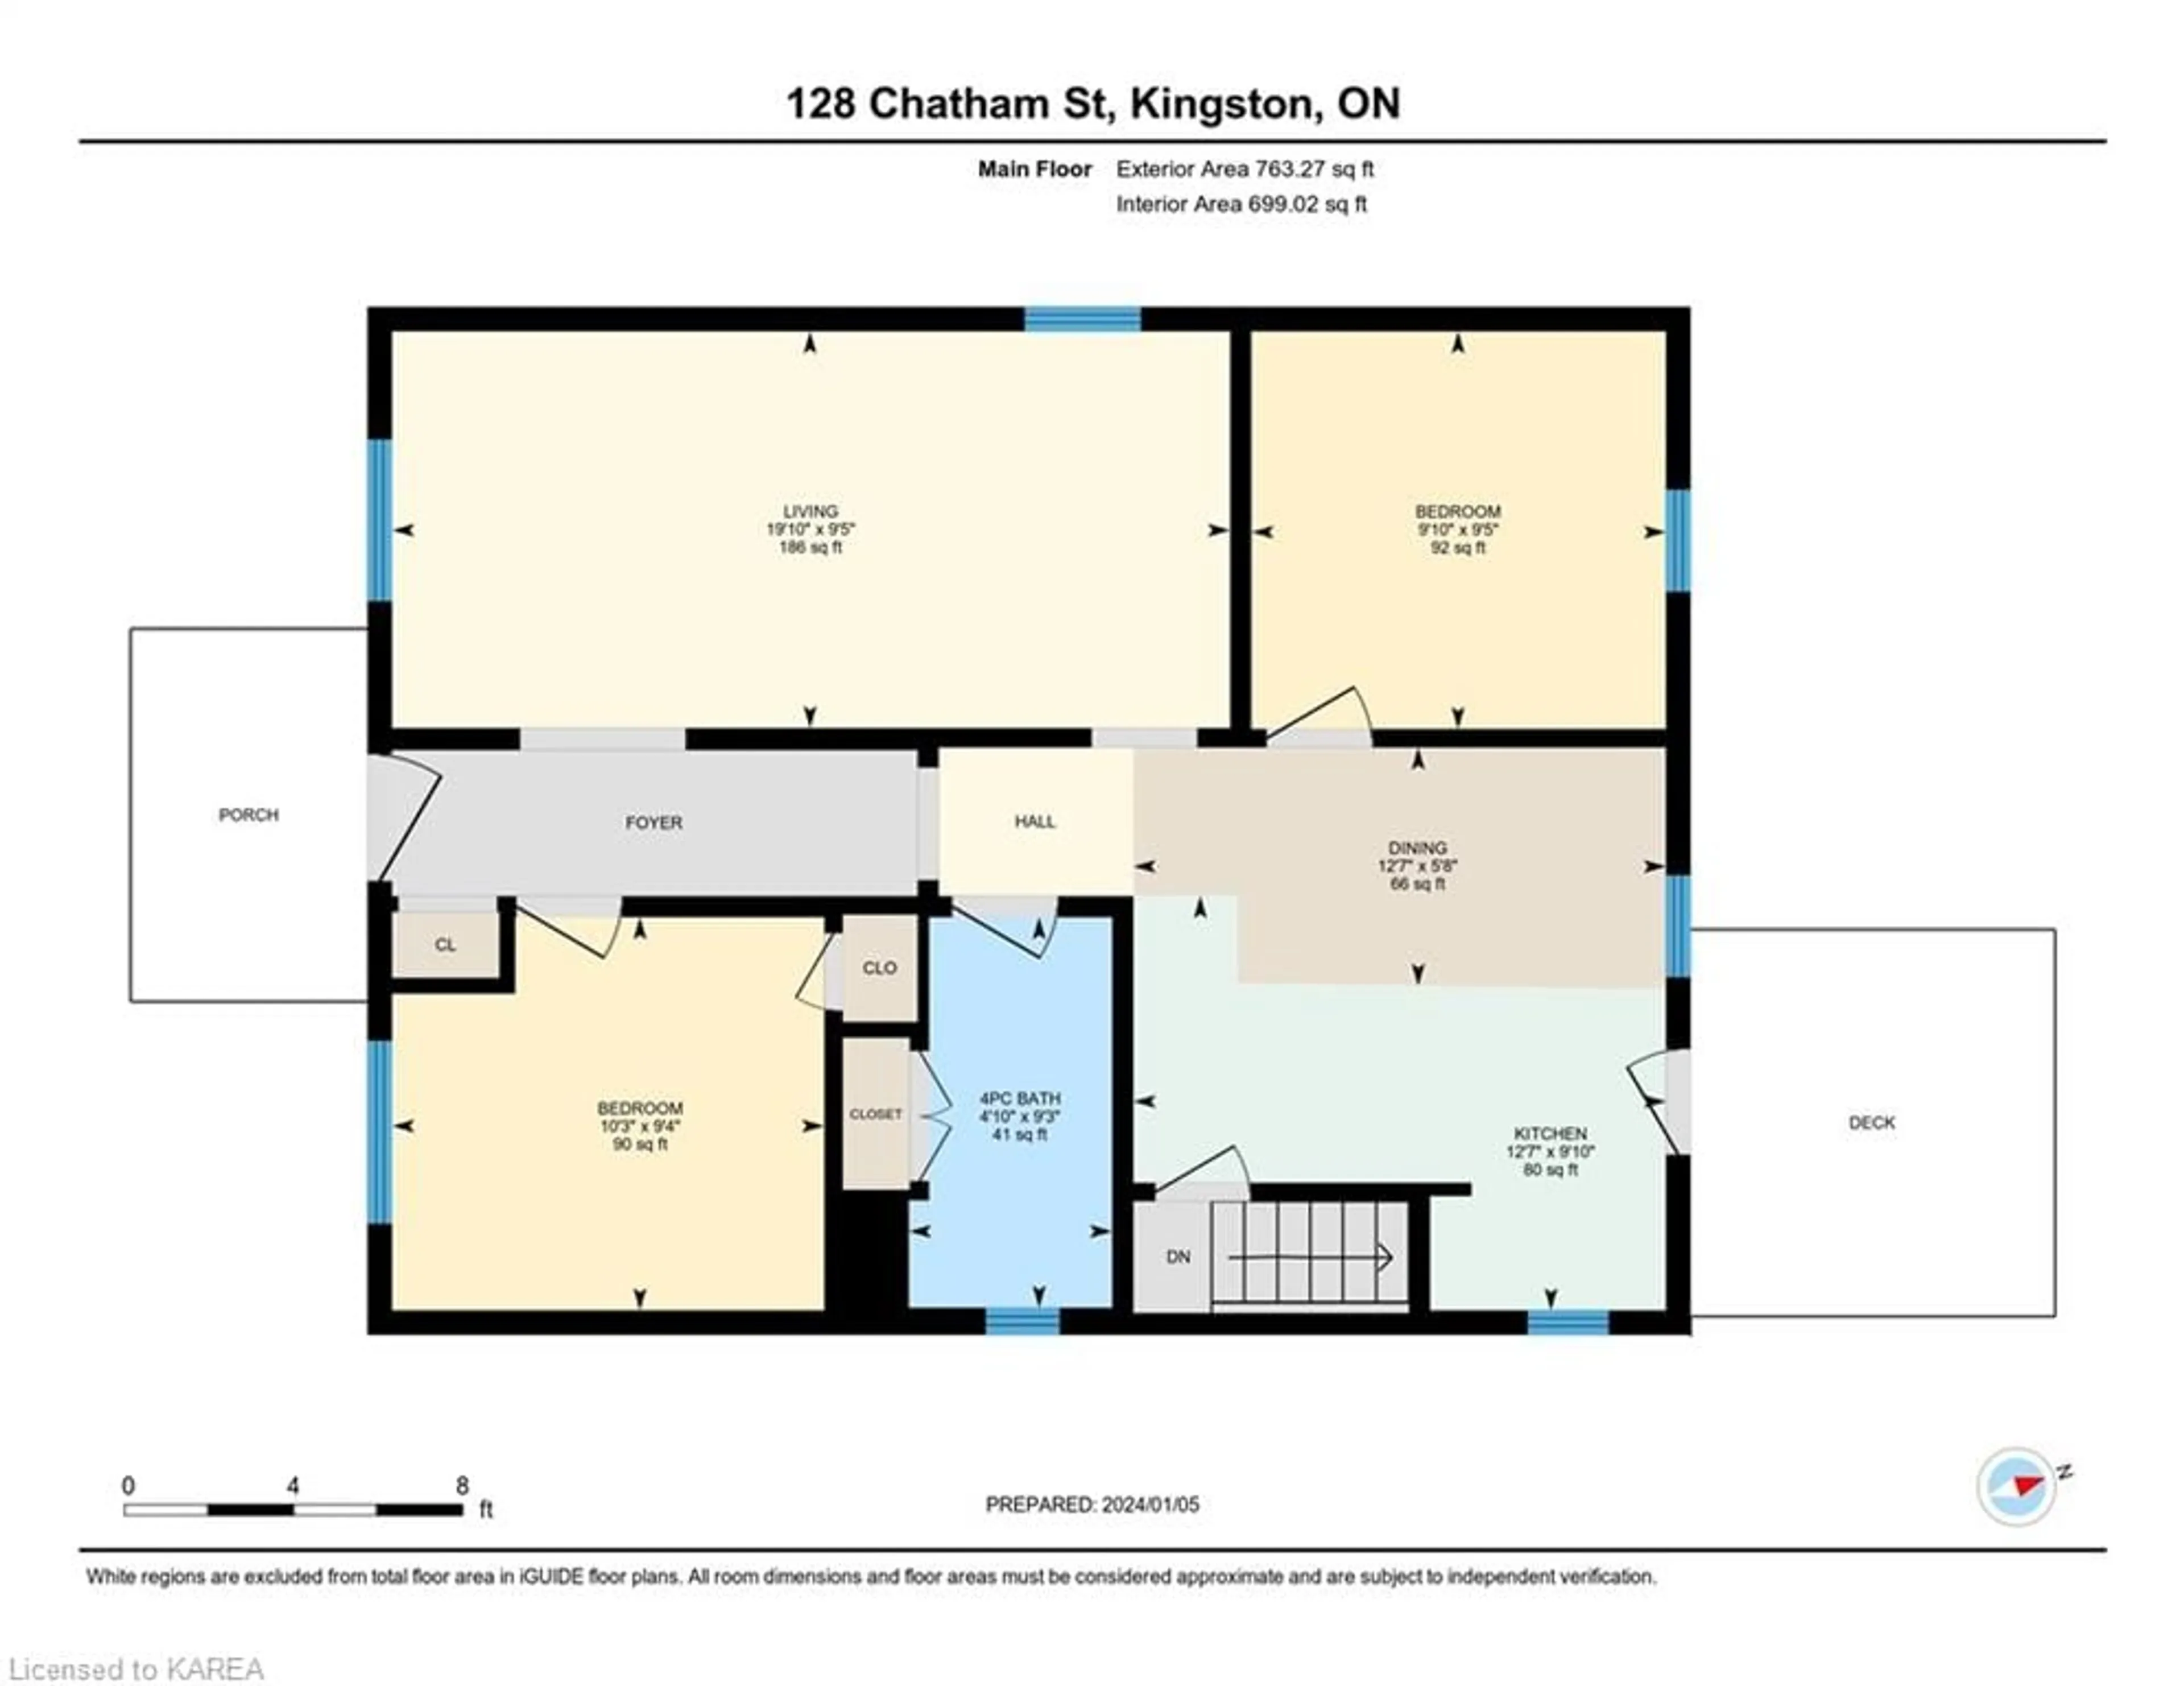 Floor plan for 128 Chatham St, Kingston Ontario K7K 4H4